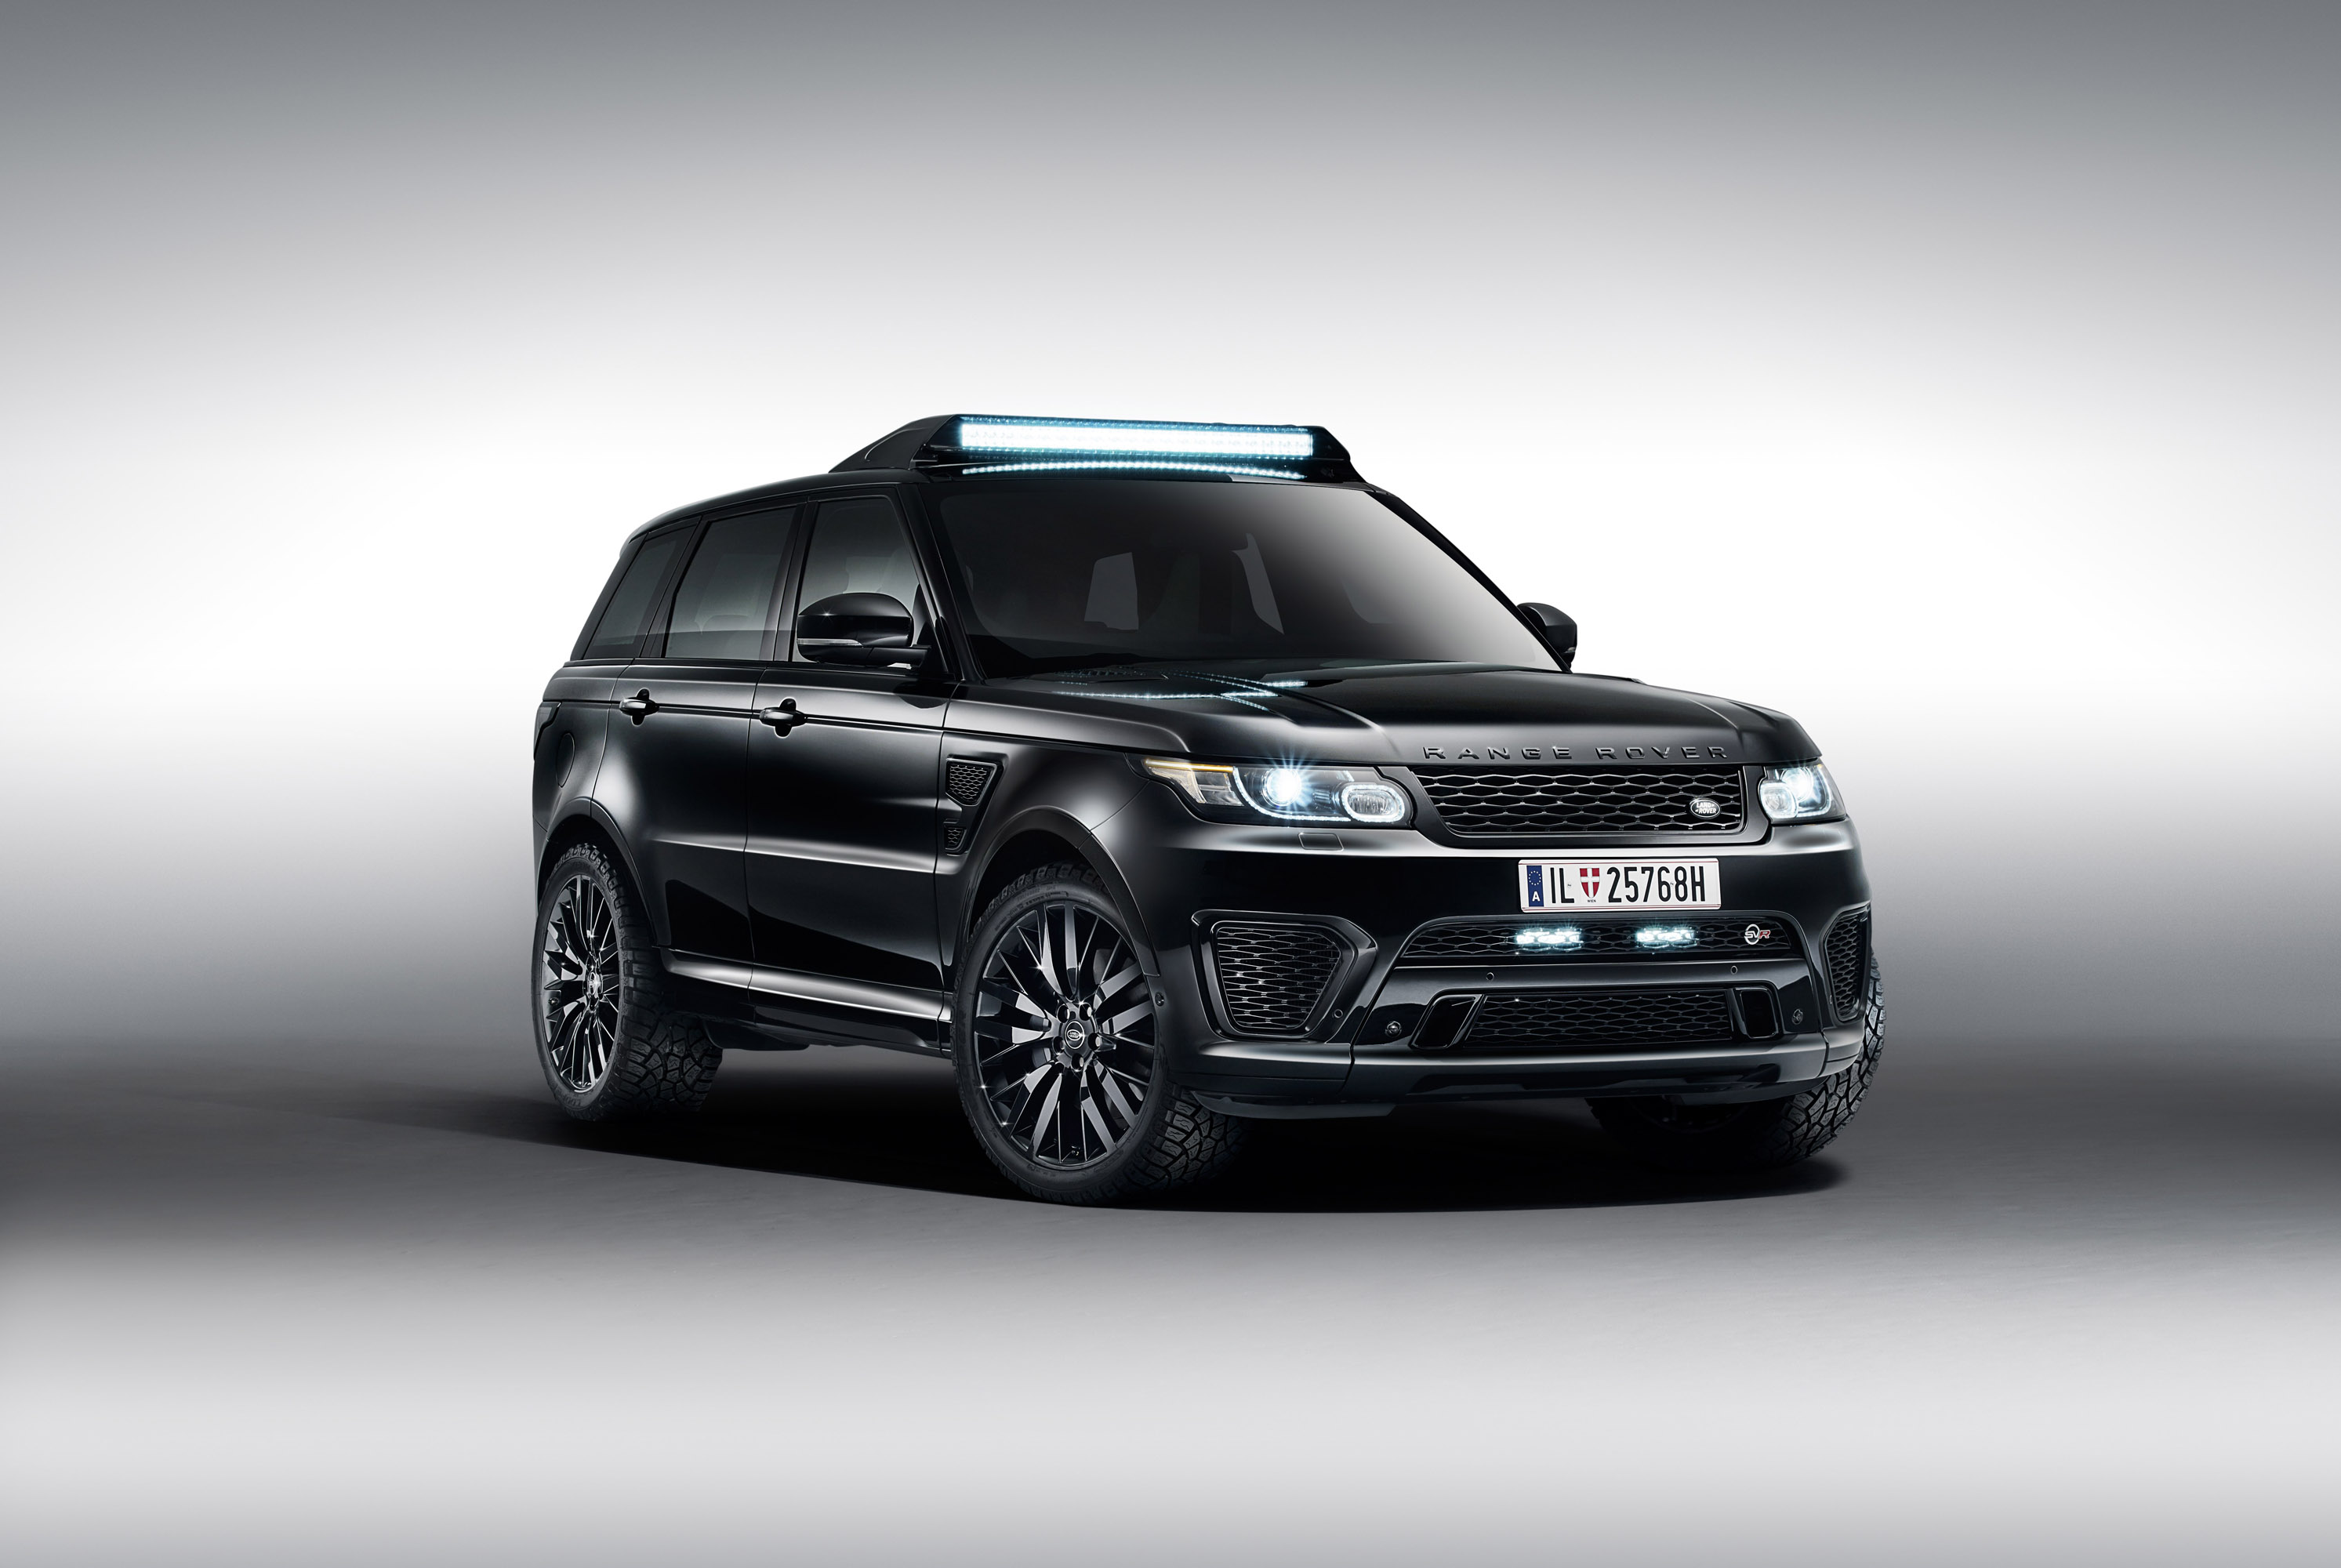 Jaguar Land Rover James Bond Spectre Cars